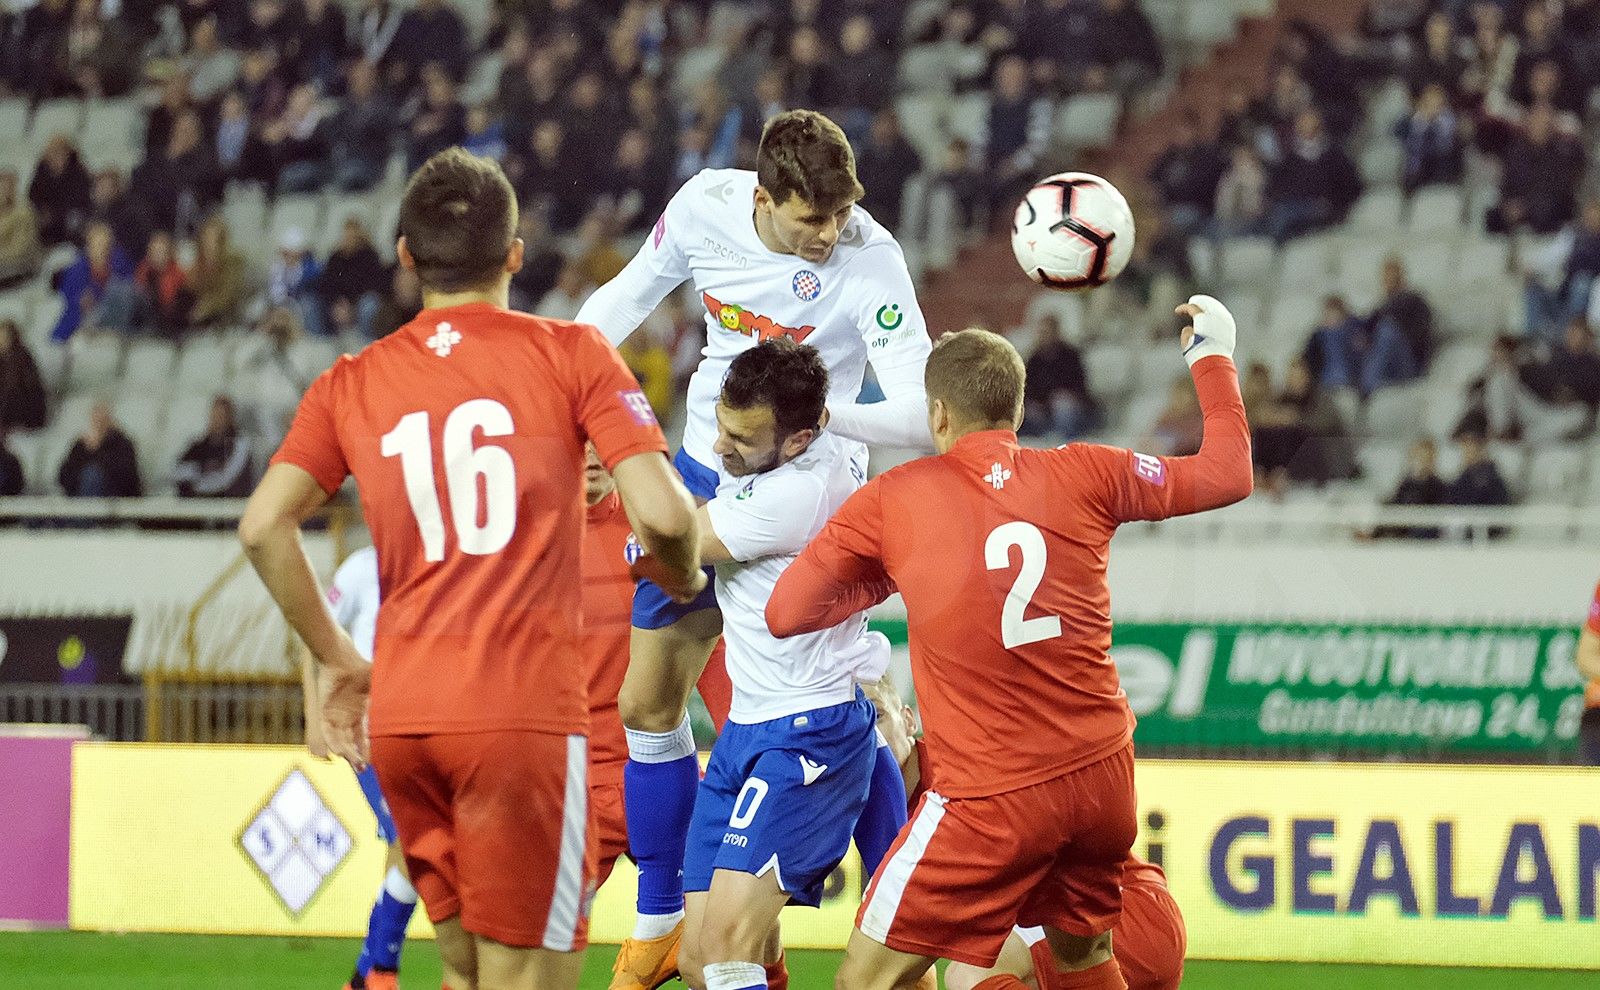 PAOK vs Hajduk Split Predictions, Tips & Match Preview